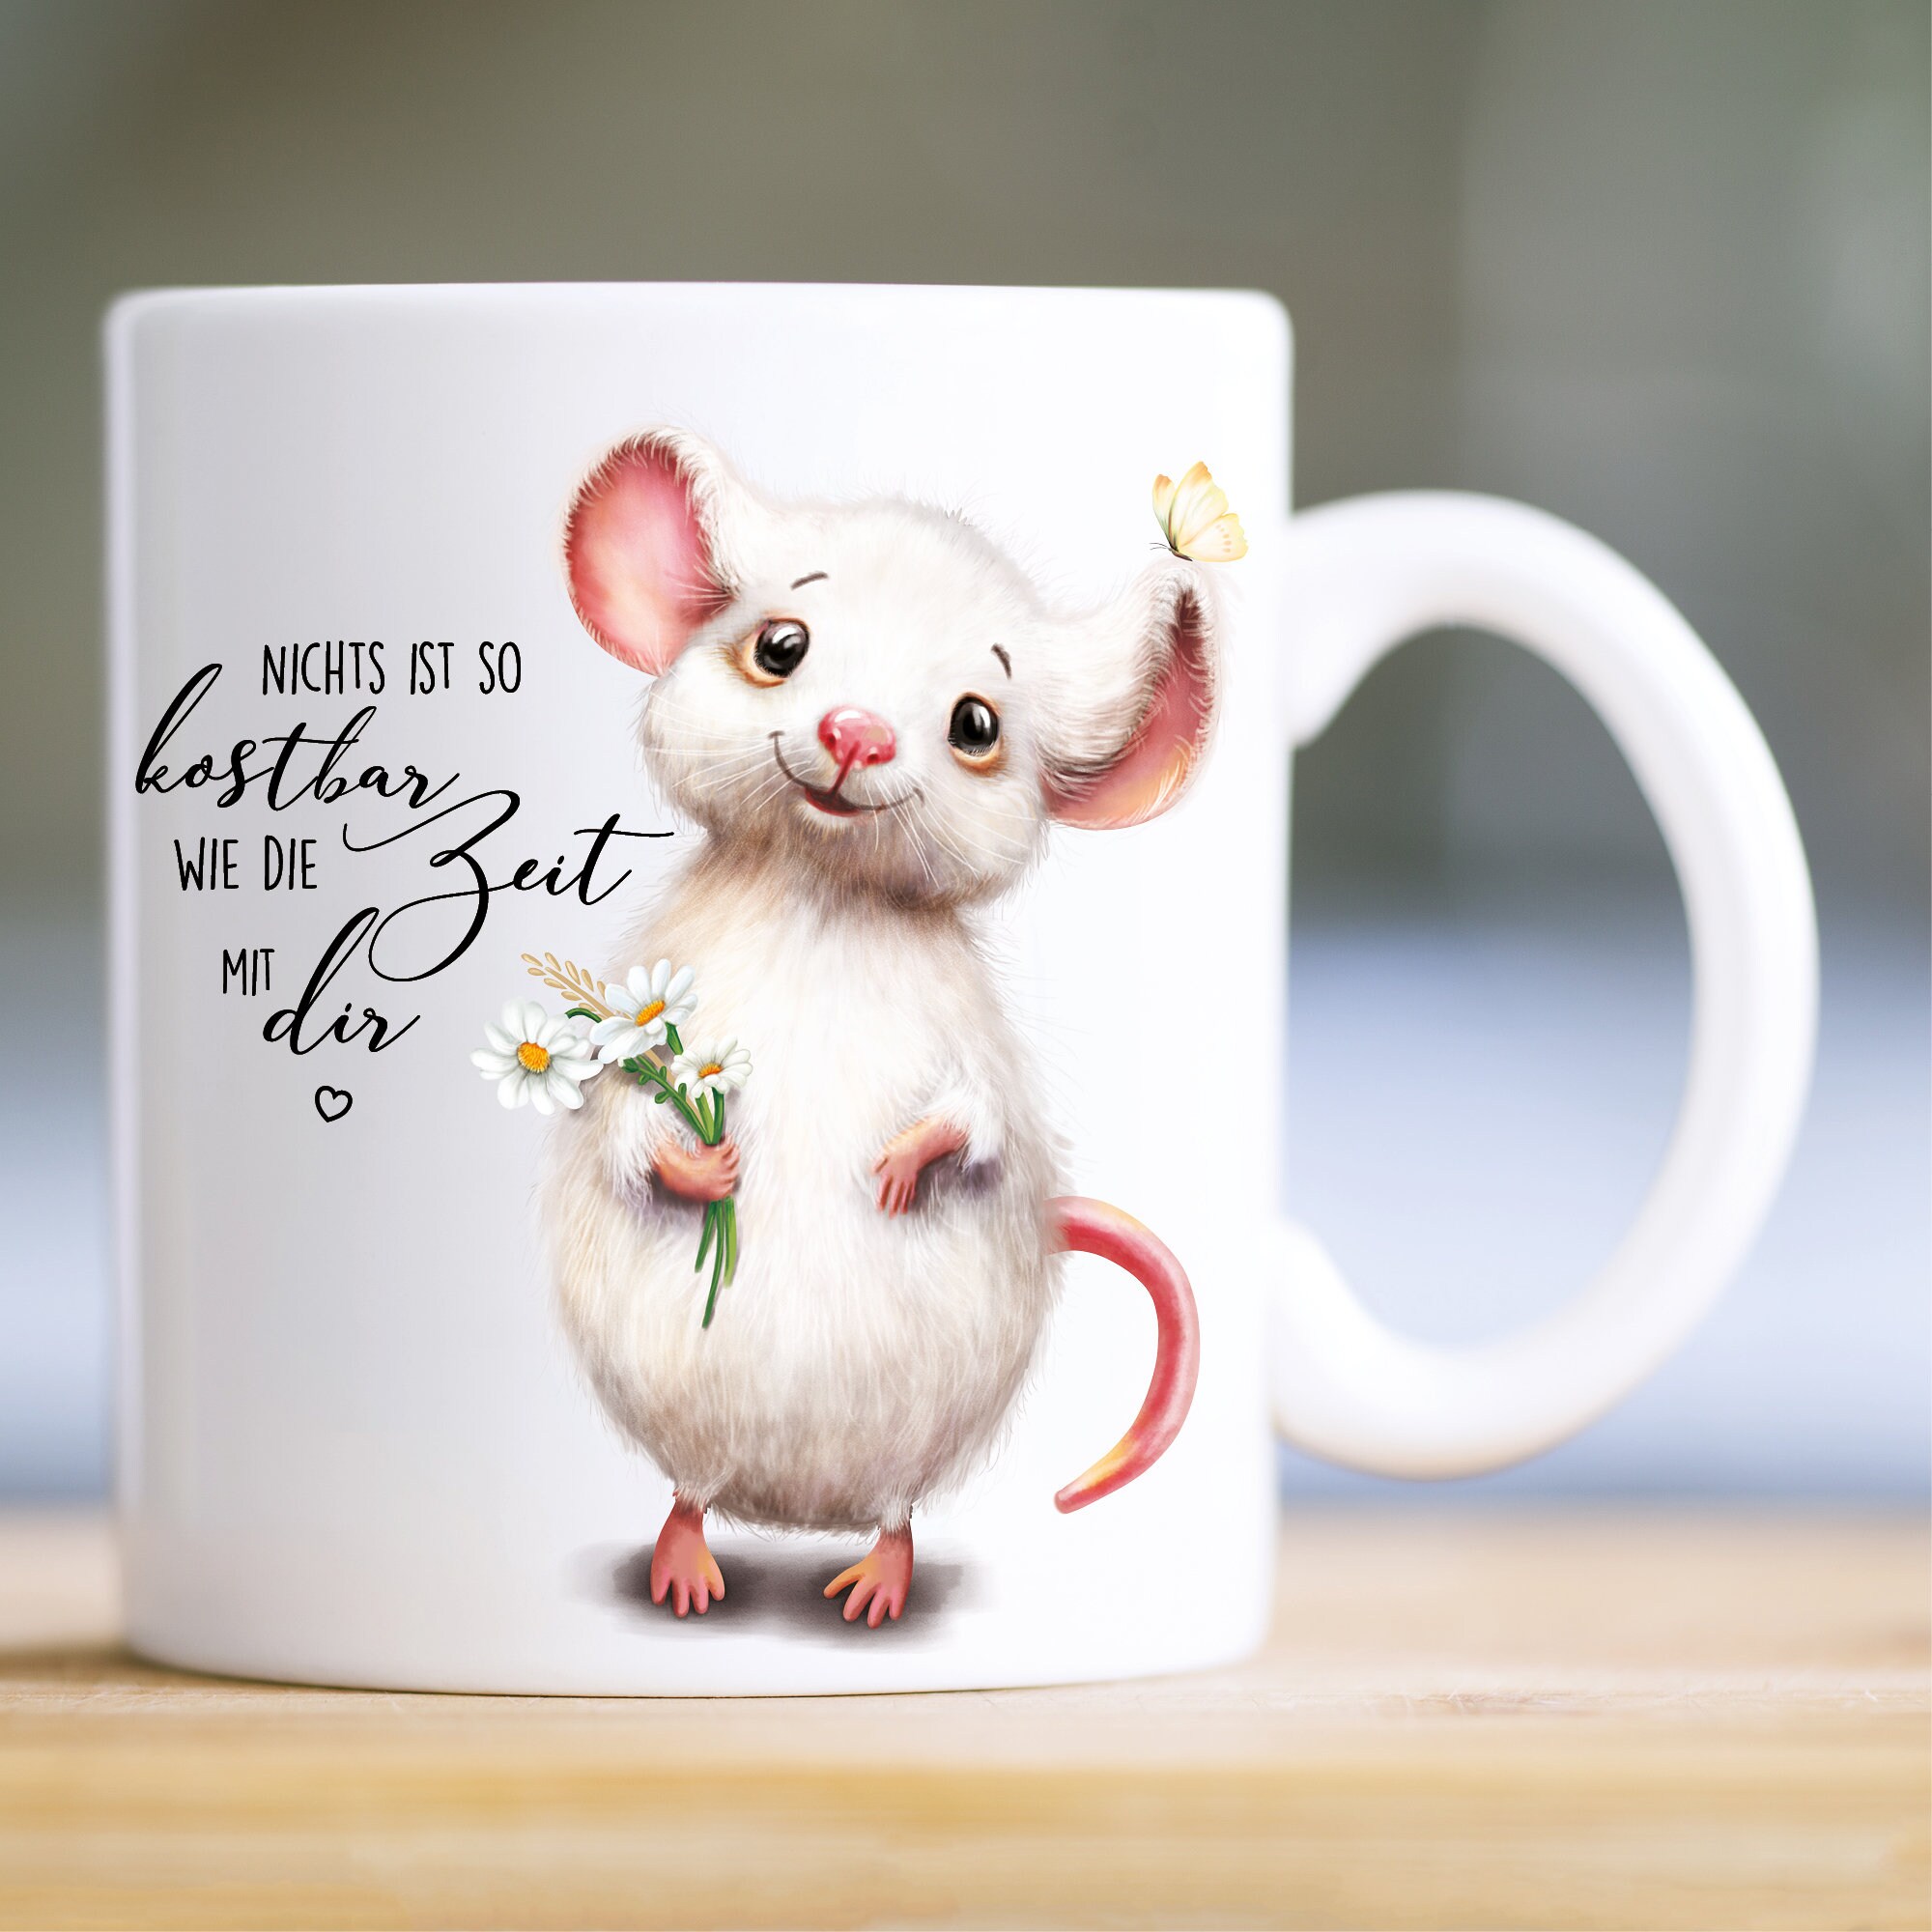 Bedruckte Keramik Tasse Maus Nichts ist so kostbar wie Zeit mit dir, Kaffeebecher, Geschenk Geburtstag